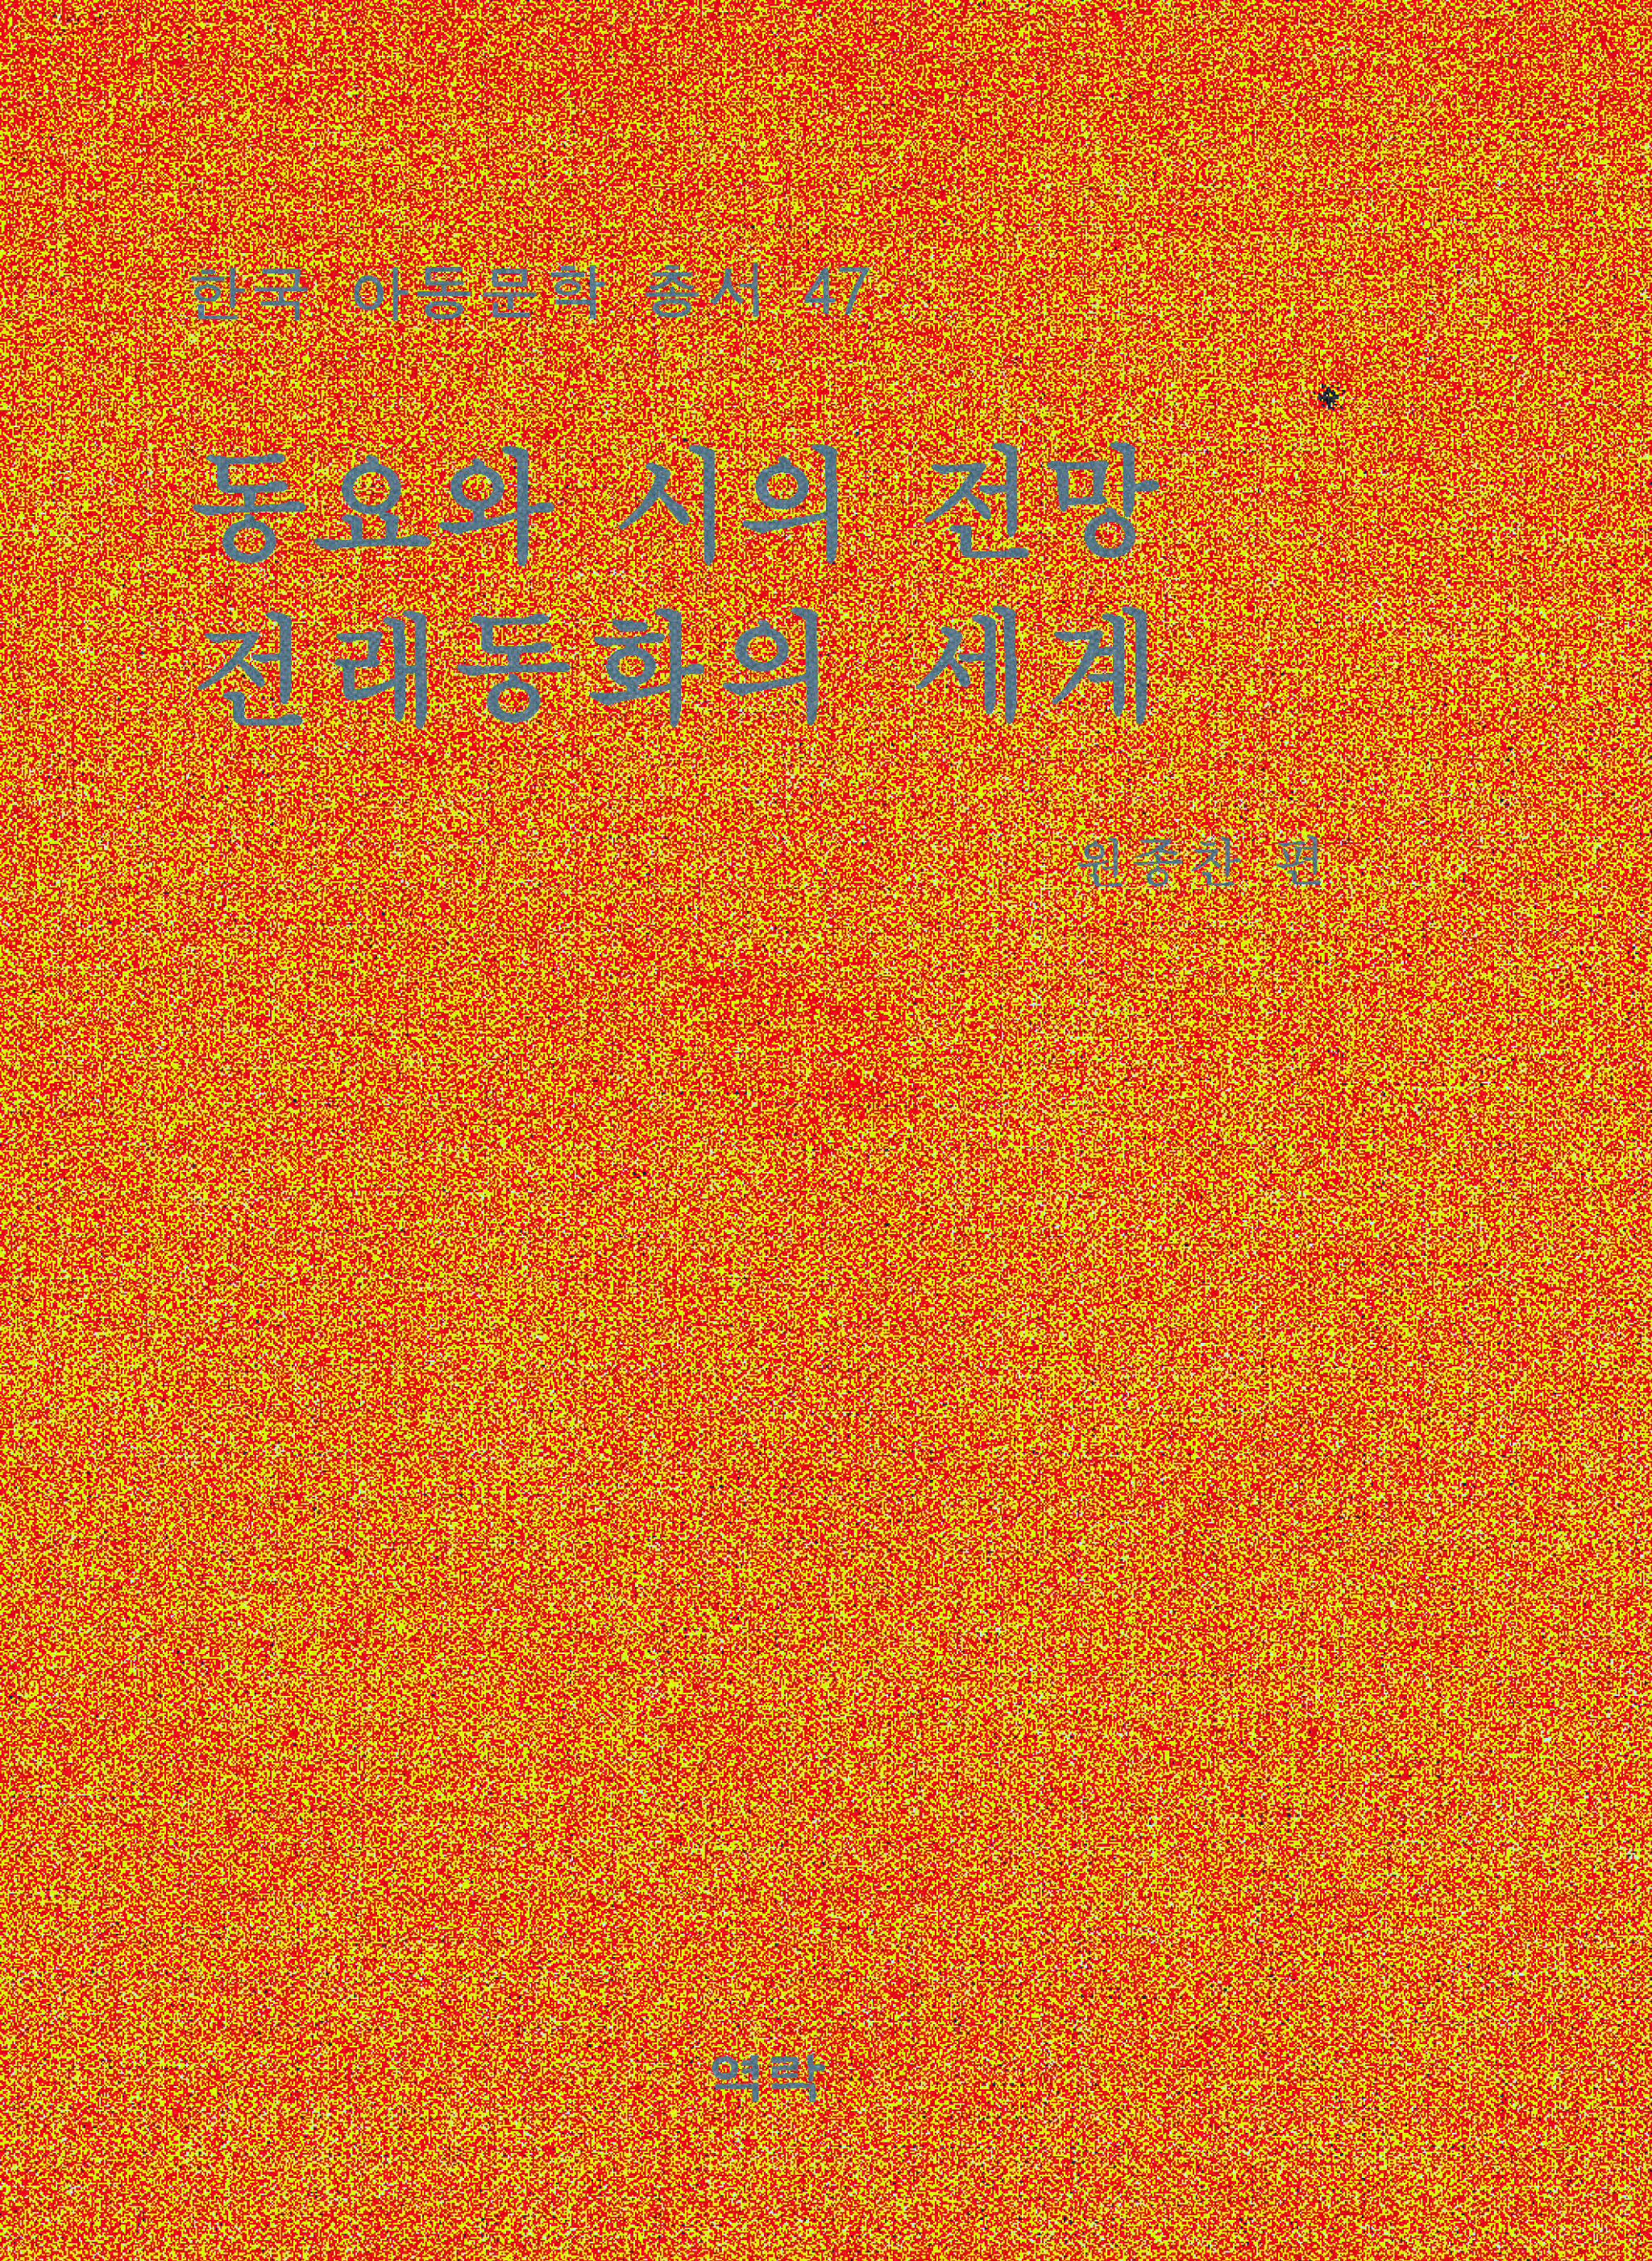 한국아동문학총서 47권